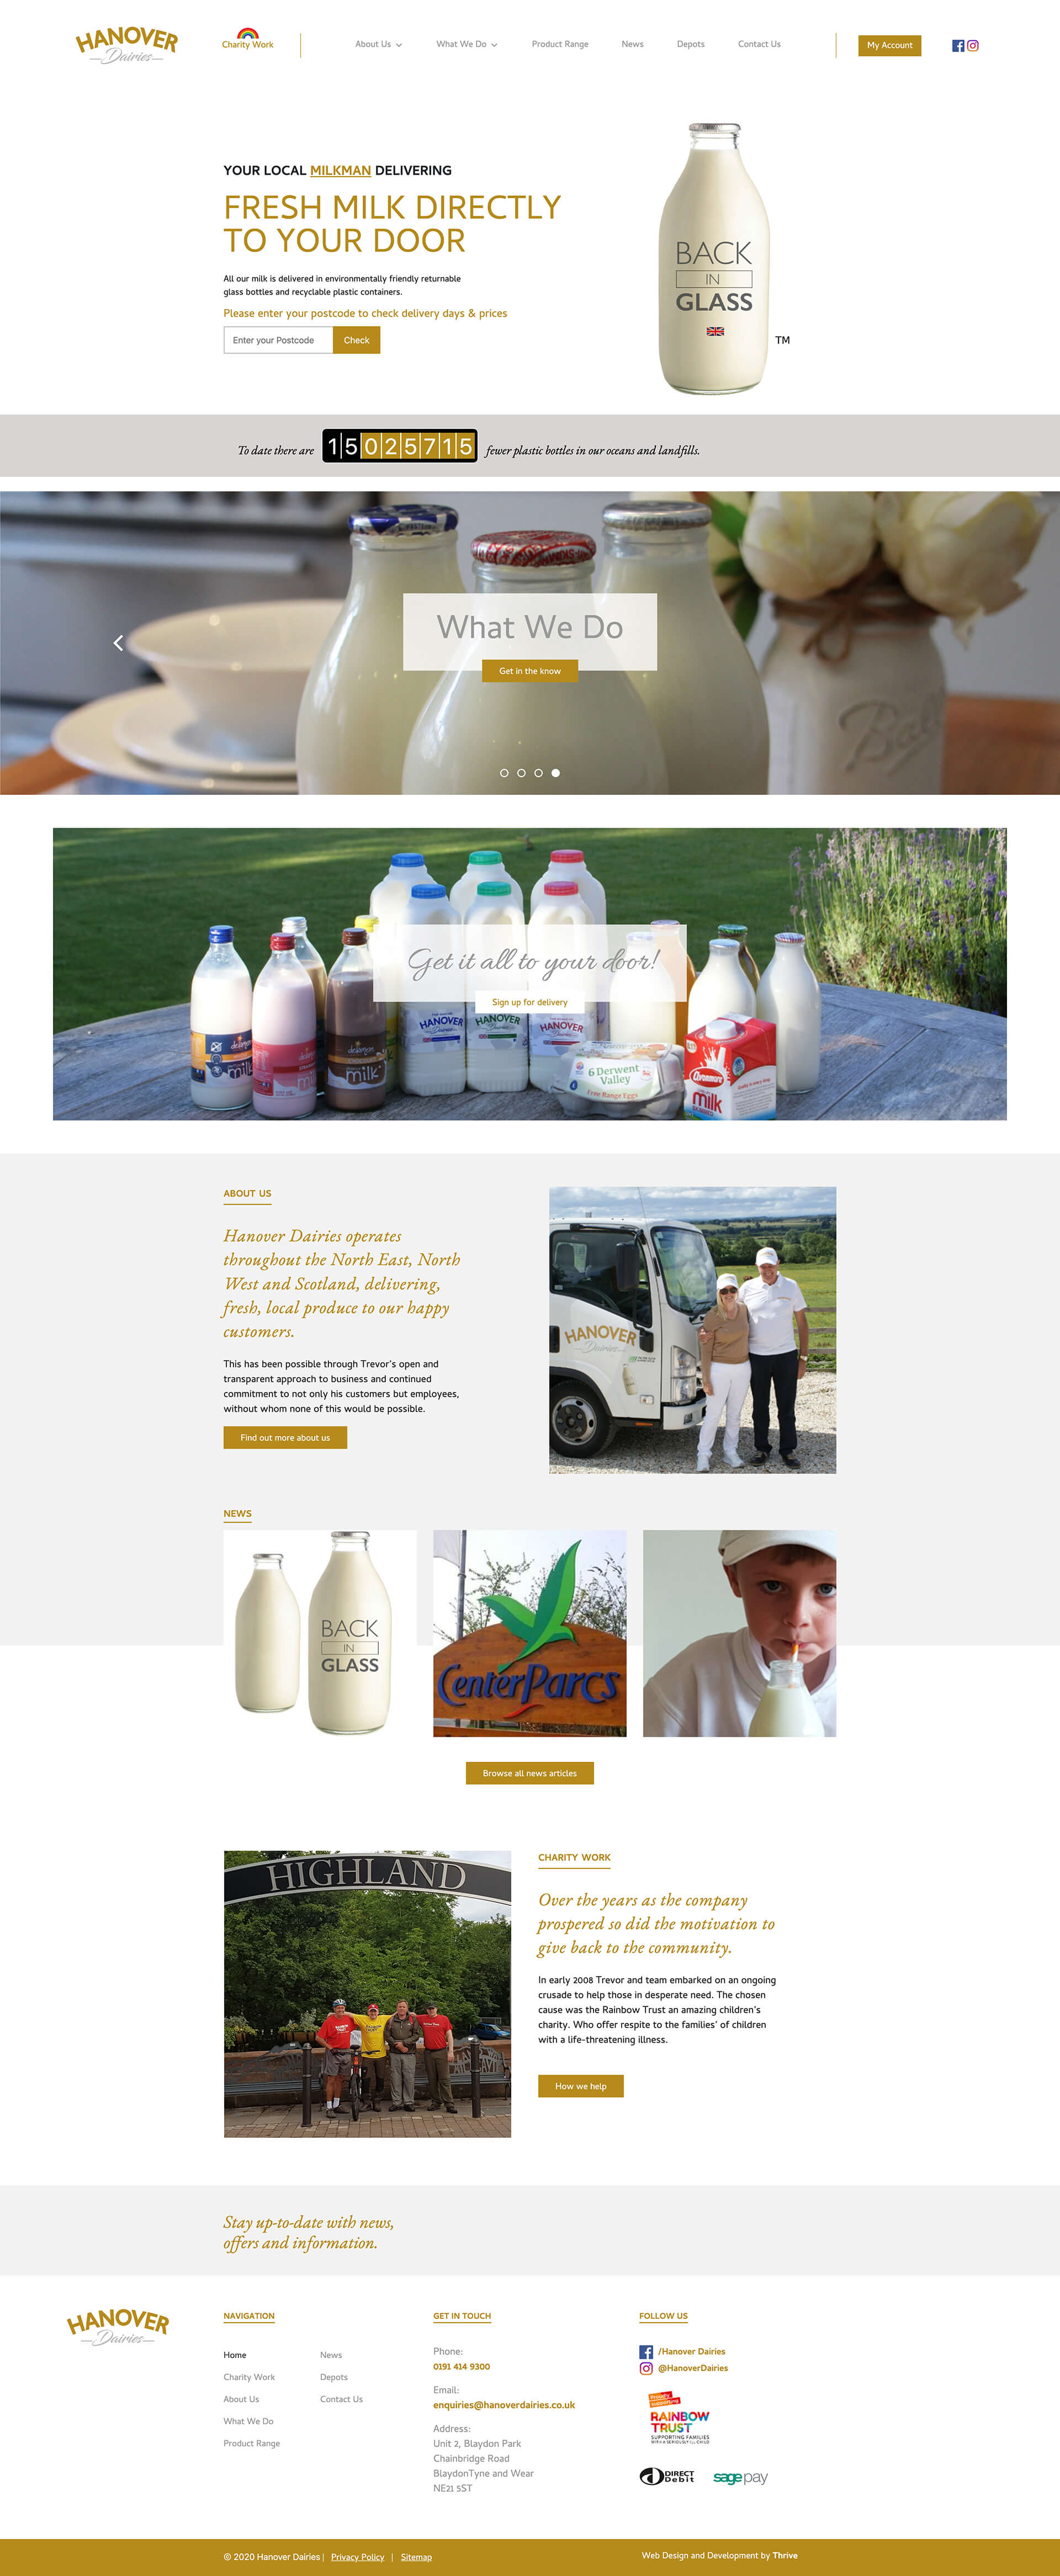 hanover-dairies-homepage-scrolling